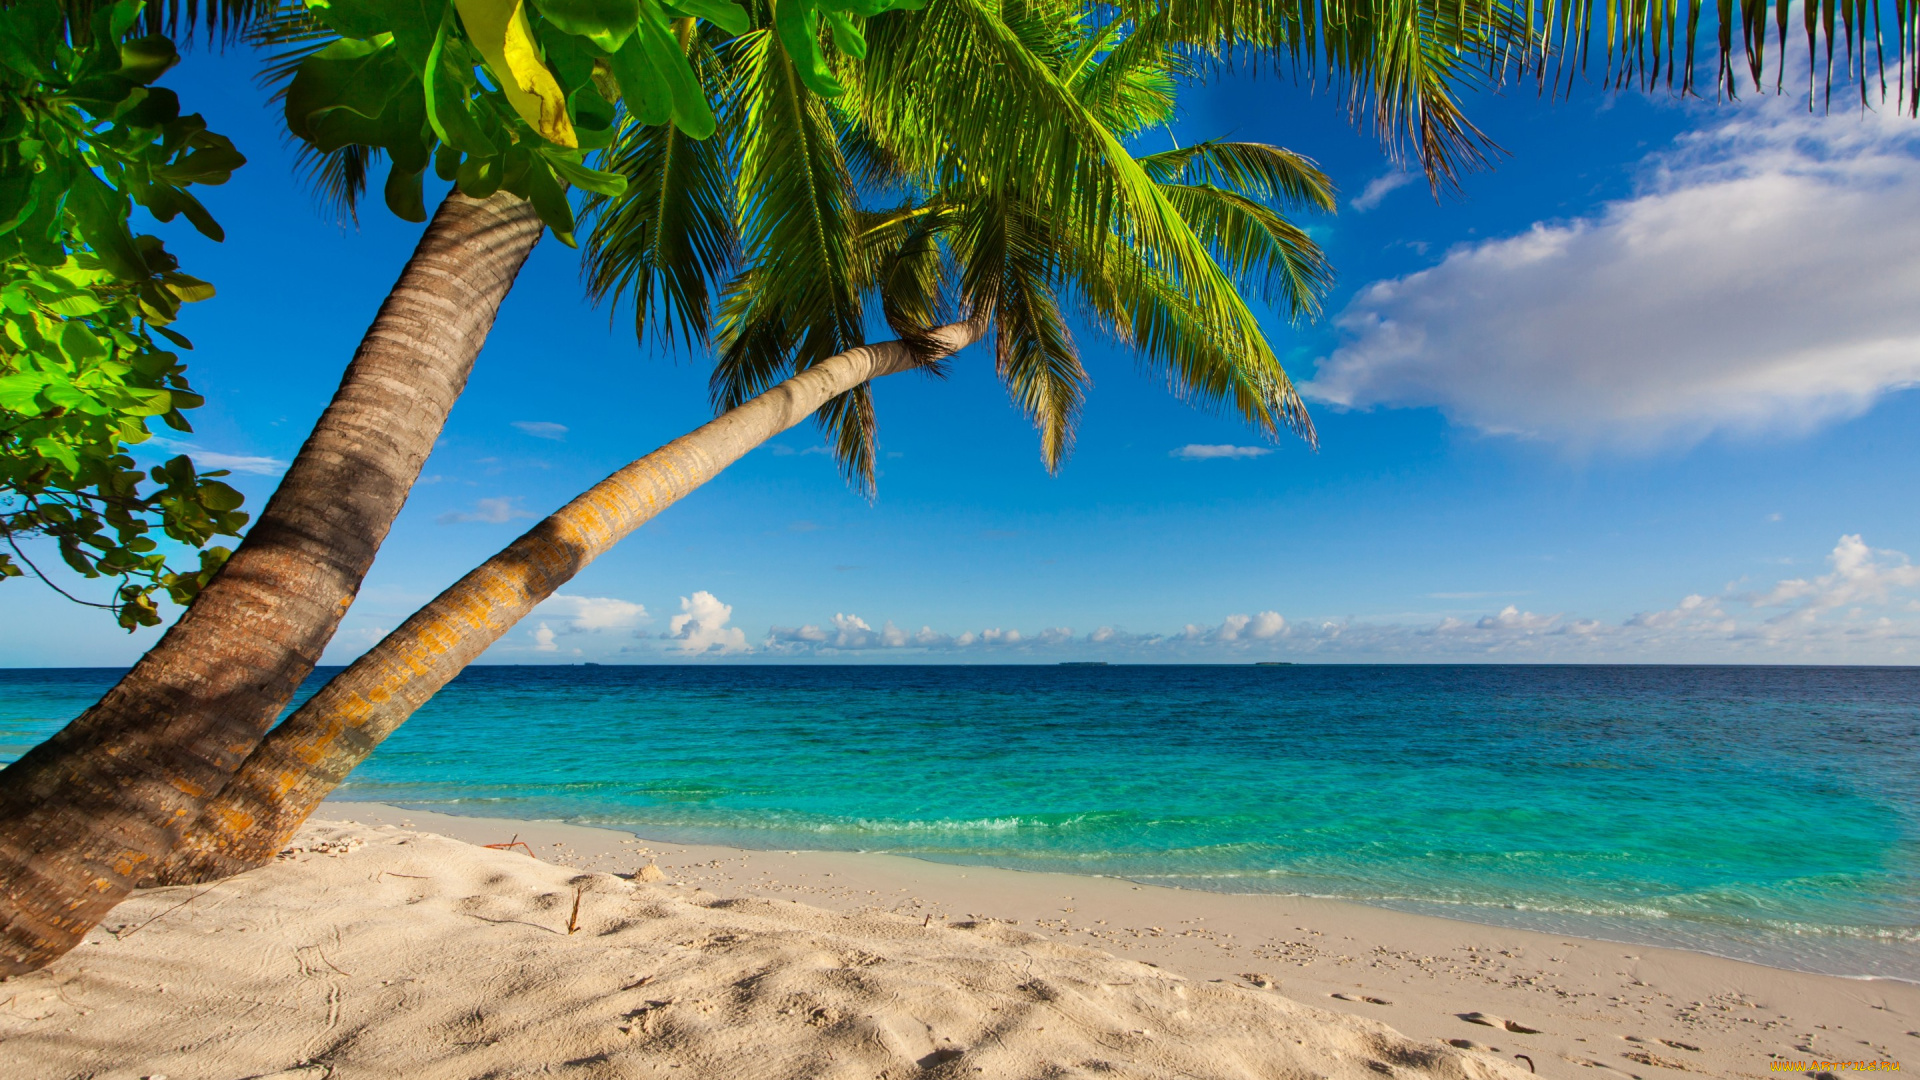 природа, тропики, shore, sea, palms, summer, sand, tropical, paradise, beach, пальмы, песок, берег, море, пляж